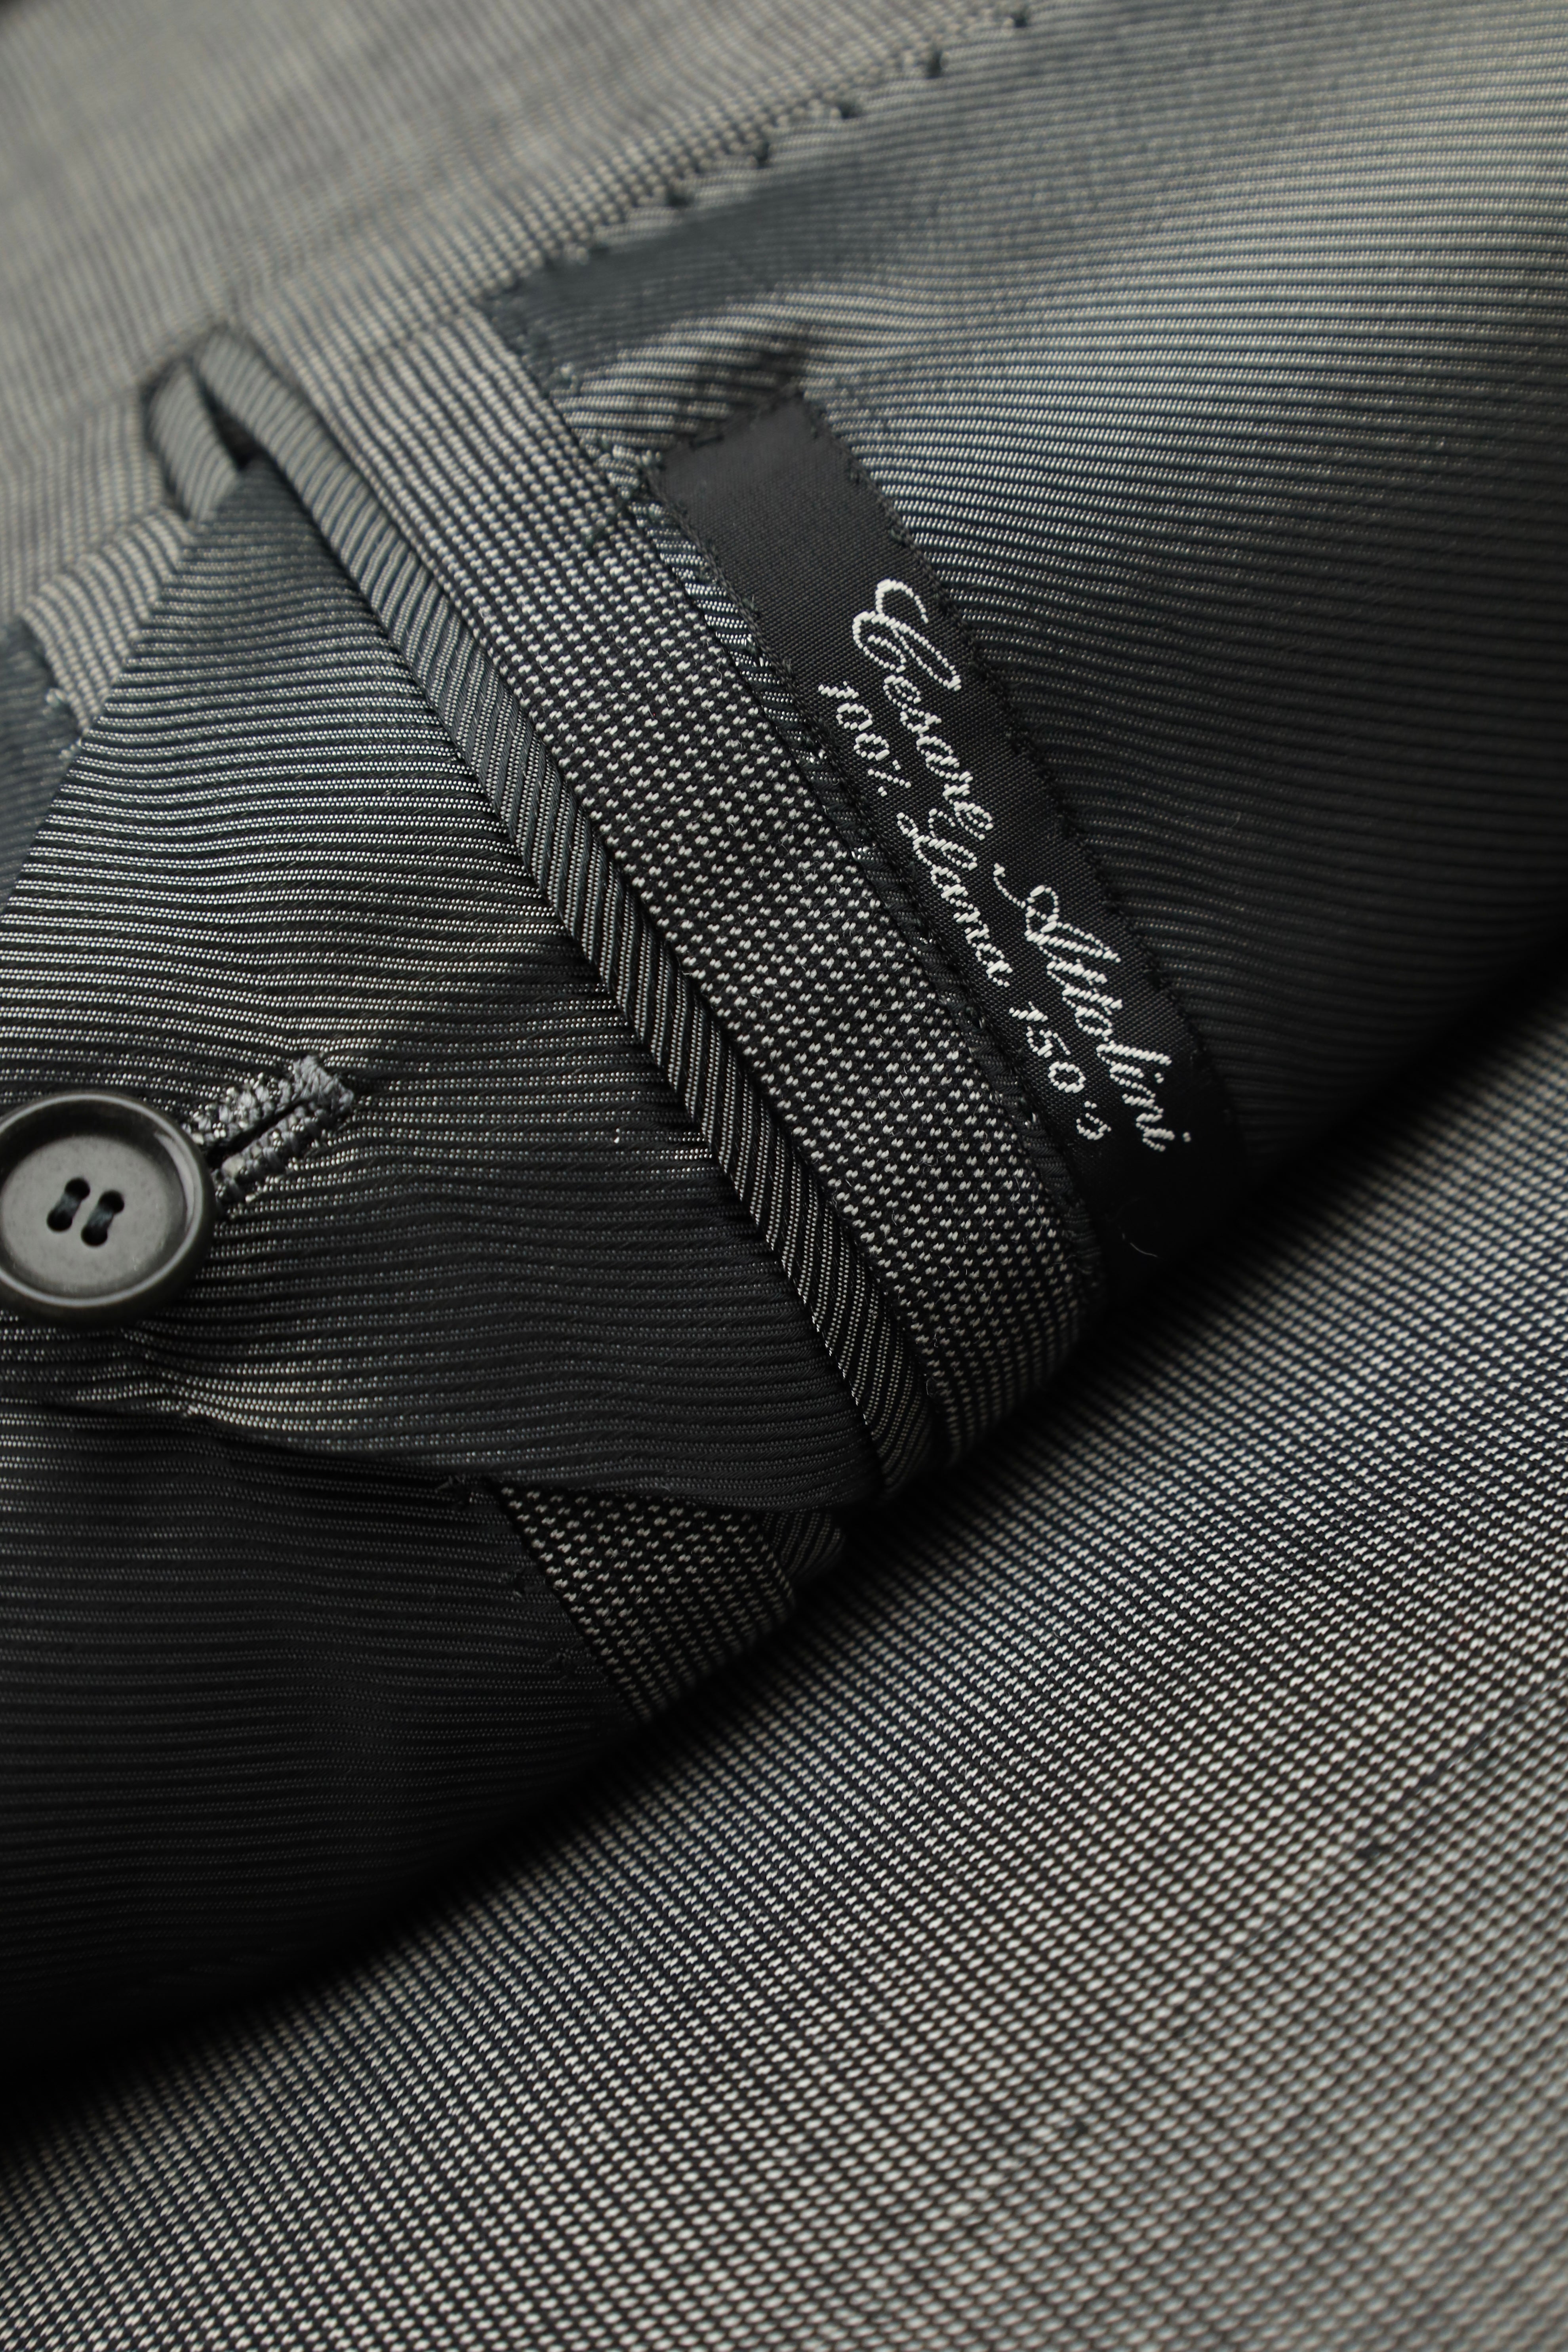 Cesare Attolini Grey Super 150's Birdseye Suit